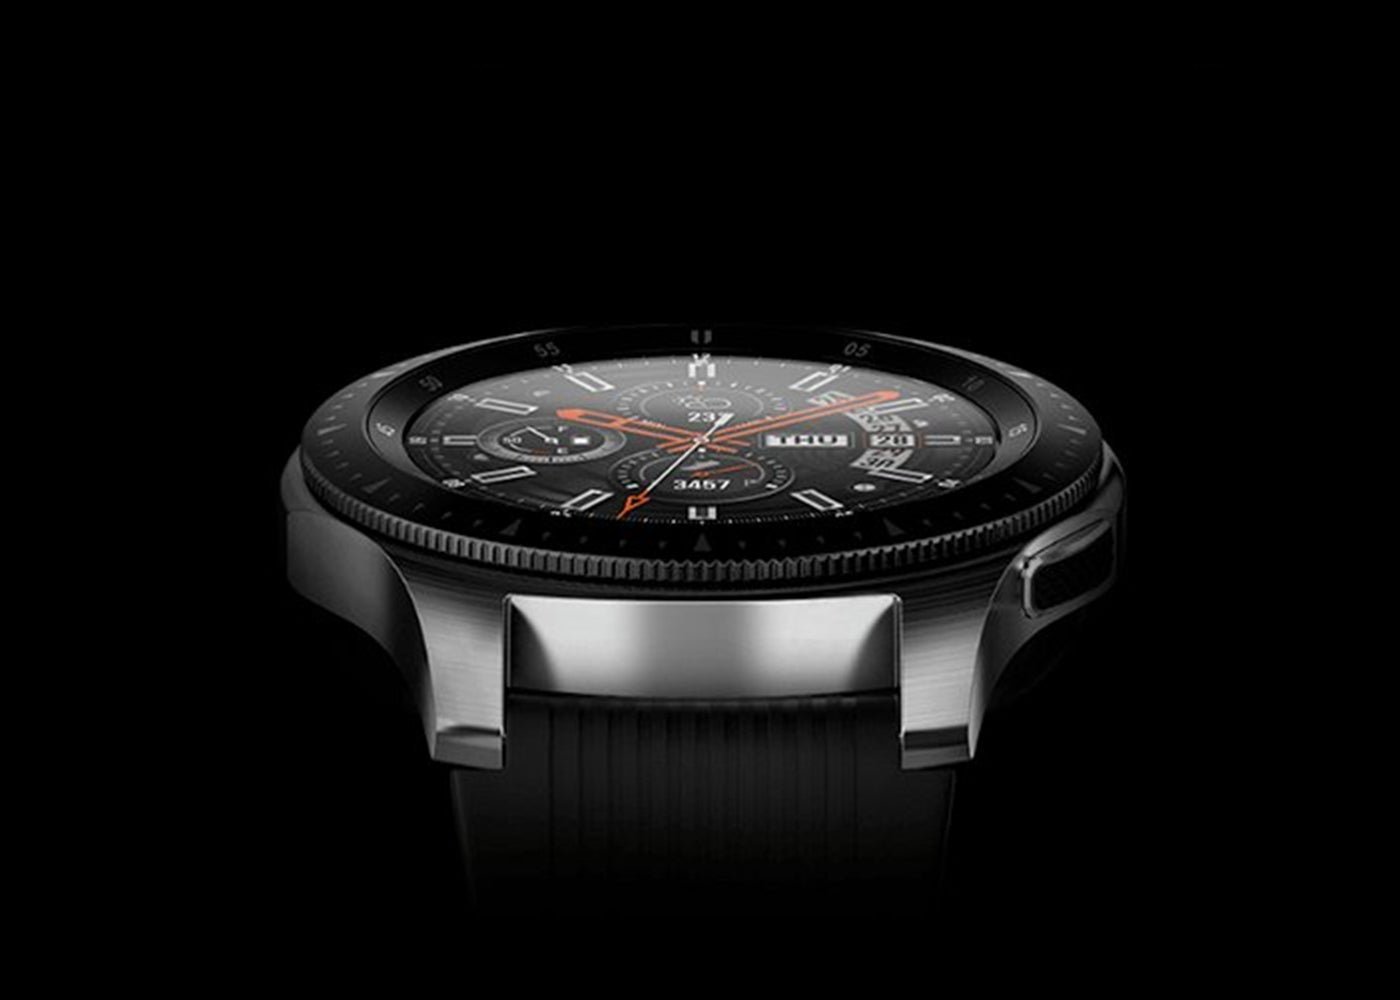 Nuevo Samsung Galaxy Watch, todas las características y precios